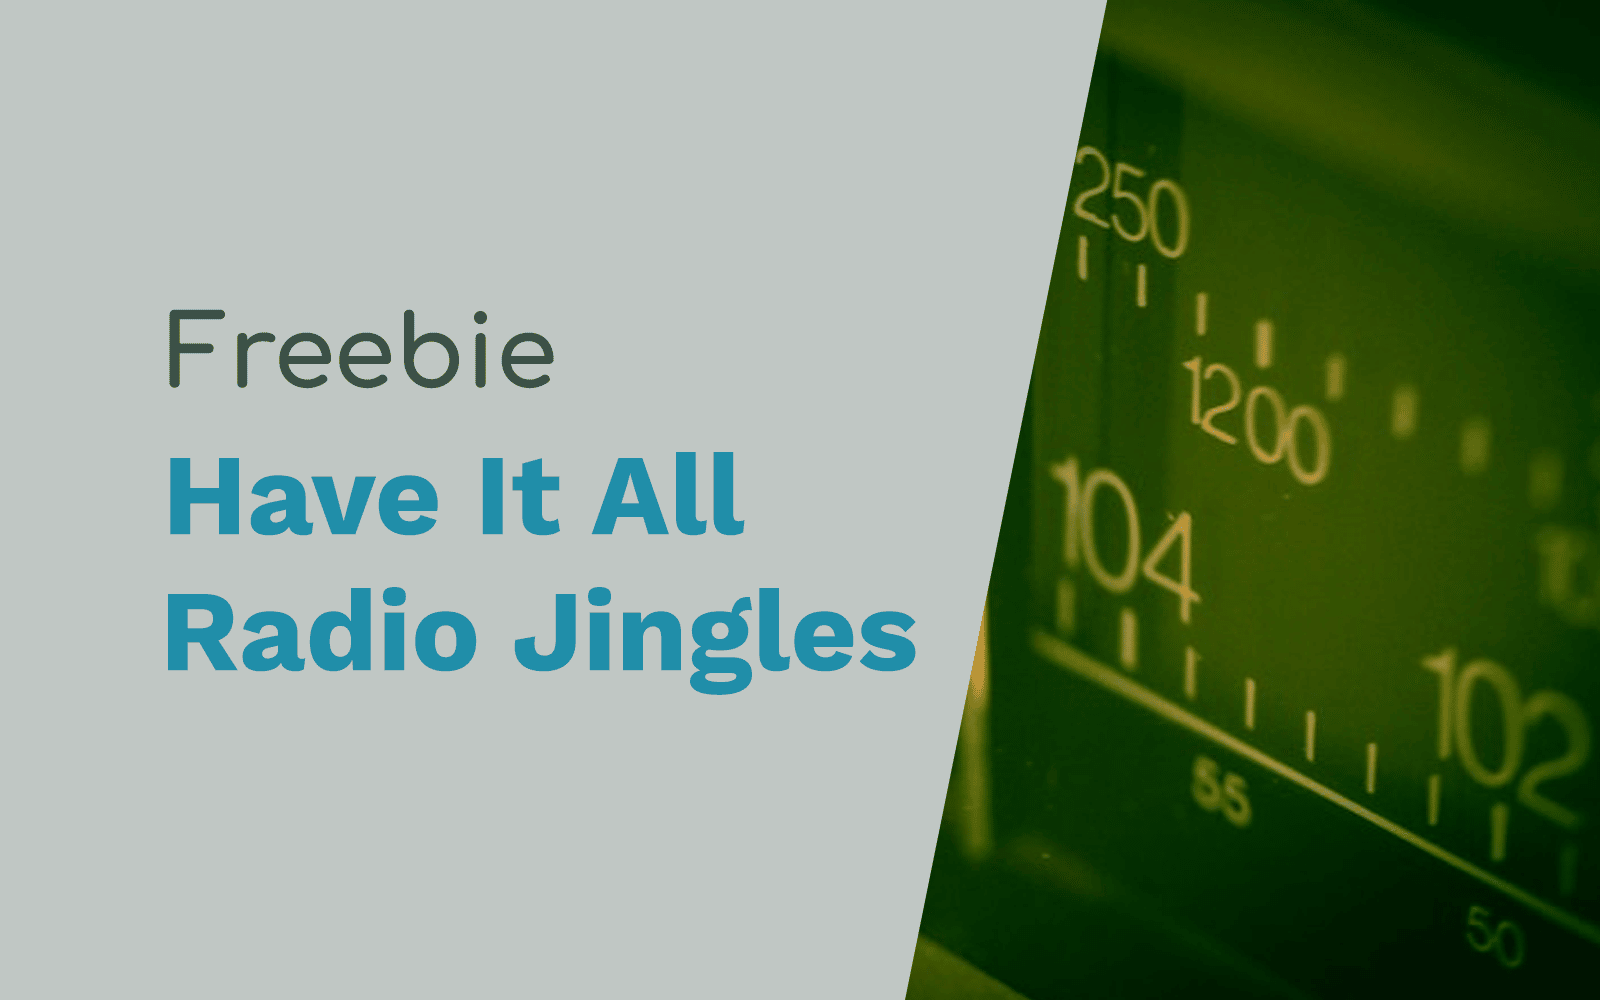 Free Radio Jingles – We Have It All Free Jingles radio jingles Music Radio Creative